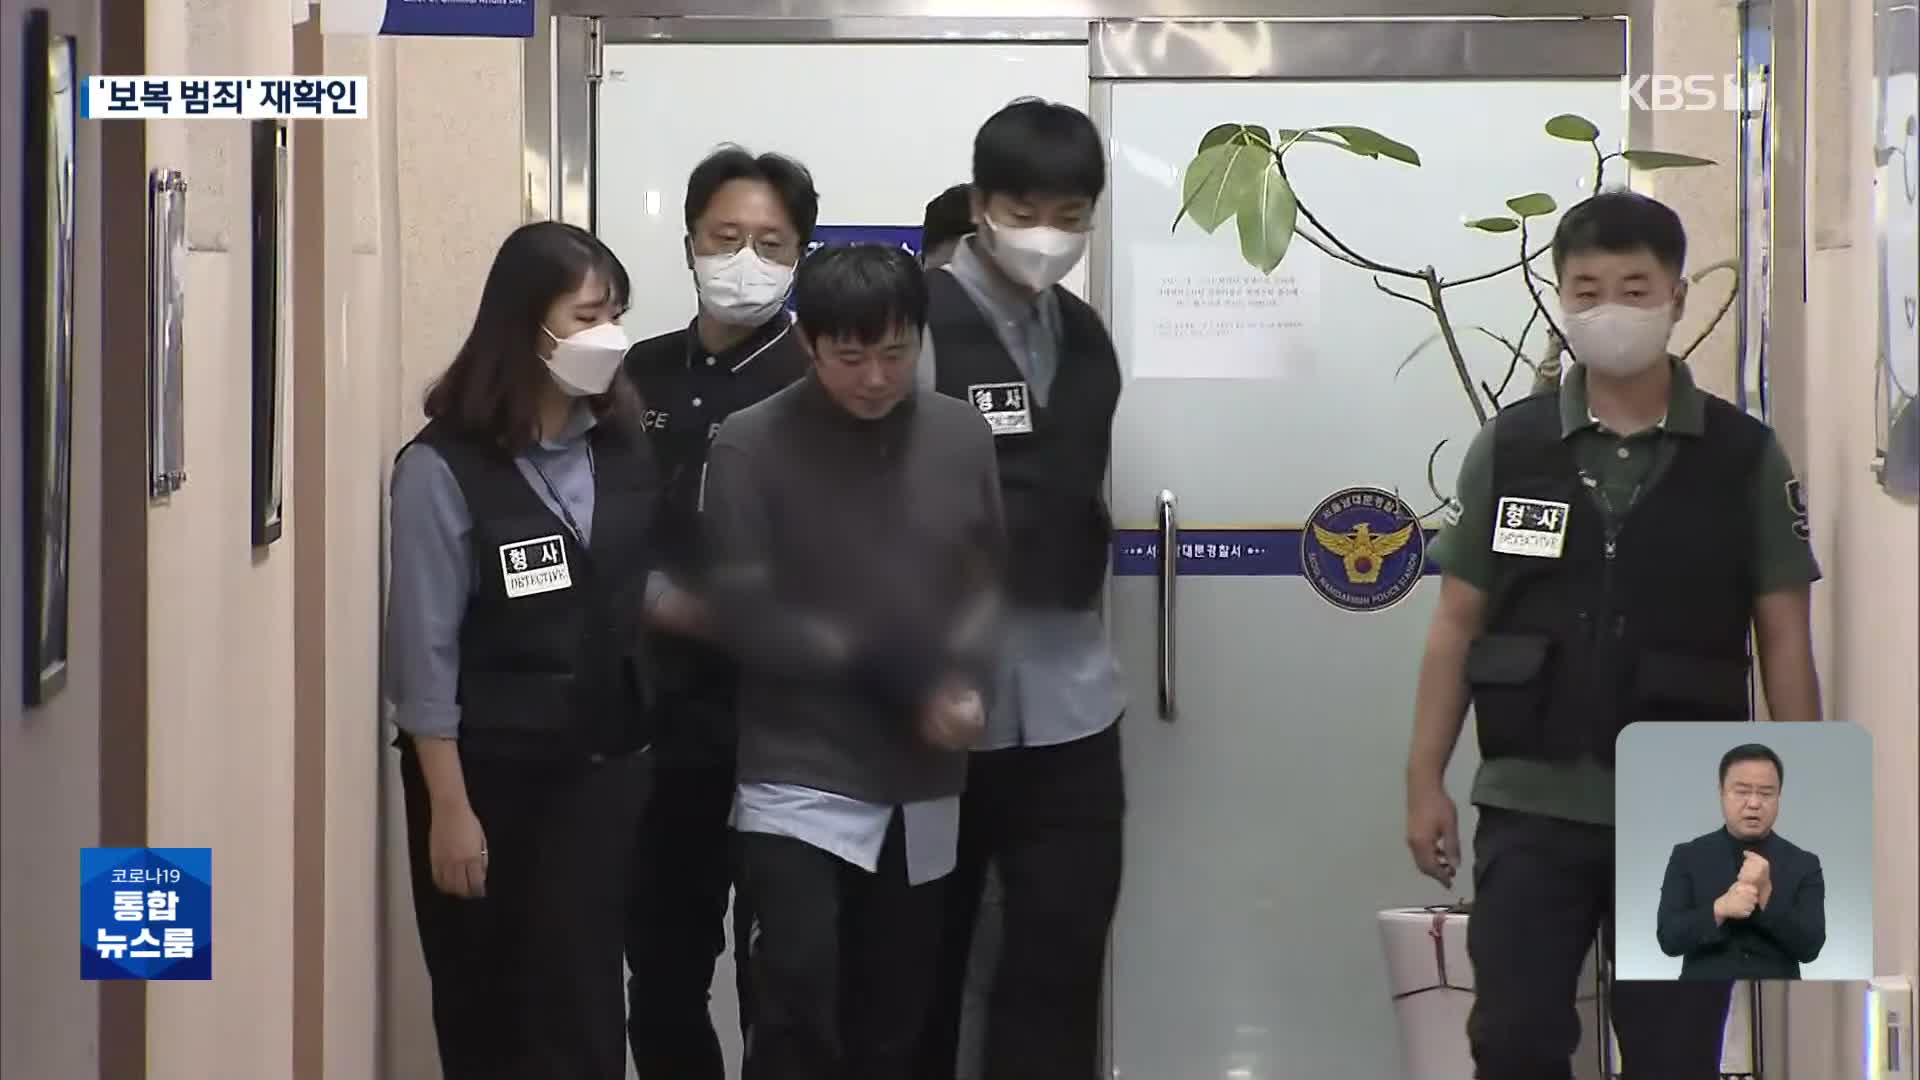 “9년 구형에 ‘피해자 탓’ 보복 결심”…CCTV로 본 전주환